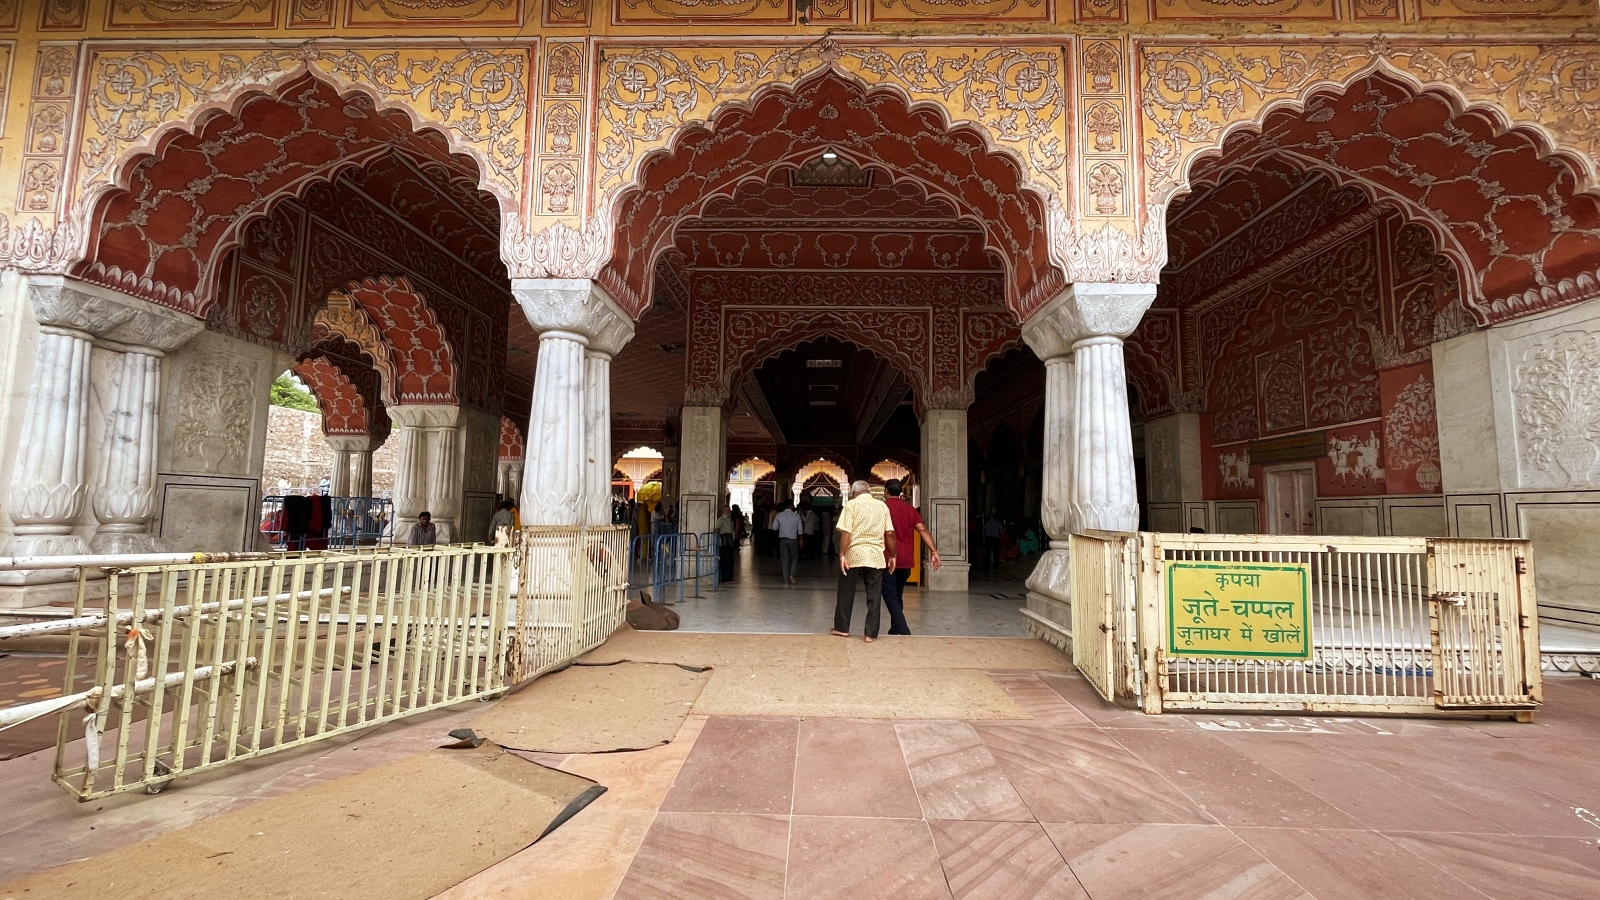 Inside Govind Ji ka temple